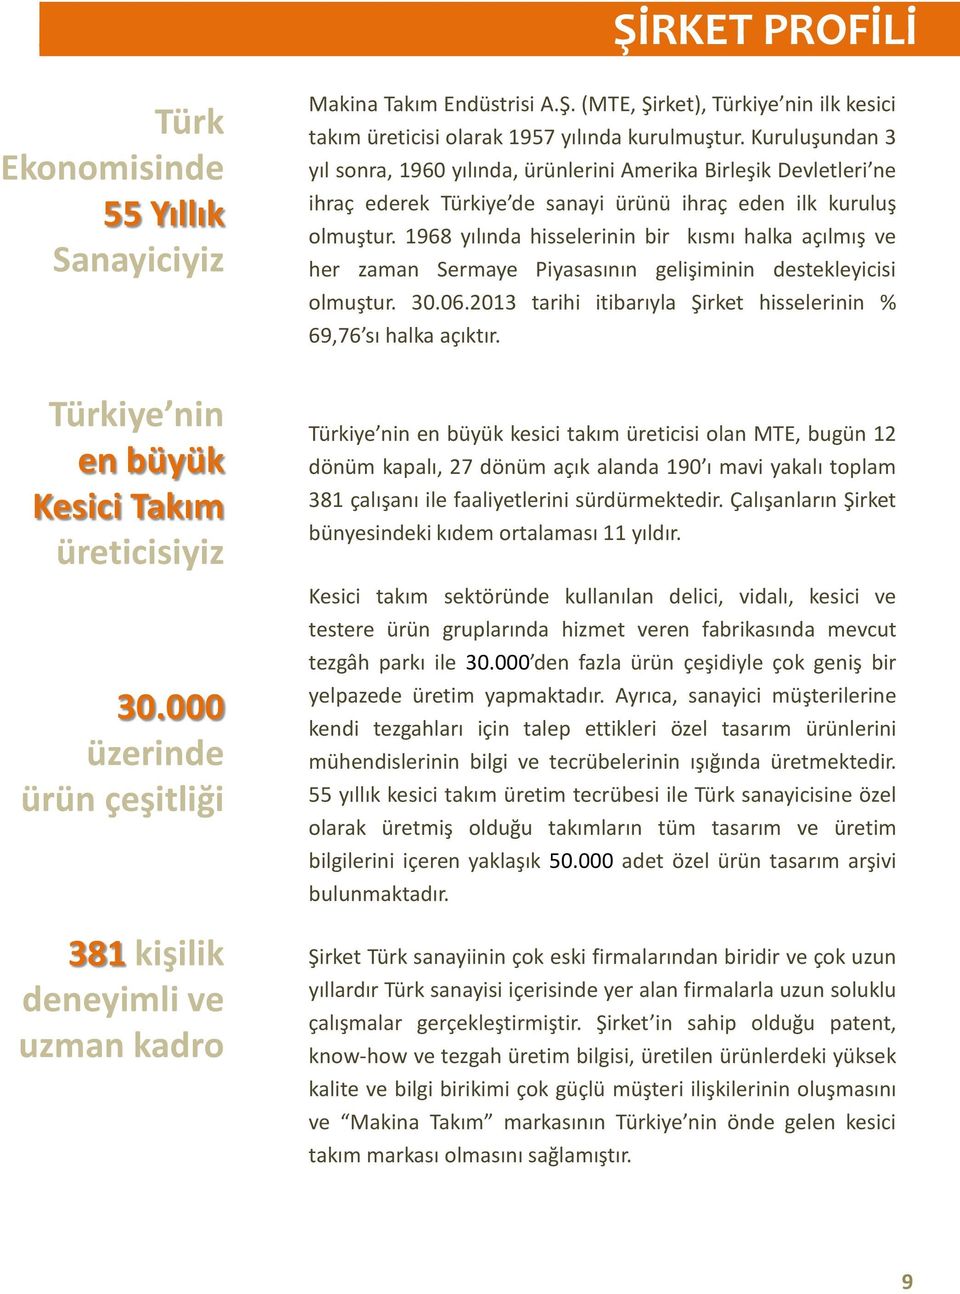 1968 yılında hisselerinin bir kısmı halka açılmış ve her zaman Sermaye Piyasasının gelişiminin destekleyicisi olmuştur. 30.06.2013 tarihi itibarıyla Şirket hisselerinin % 69,76 sı halka açıktır.